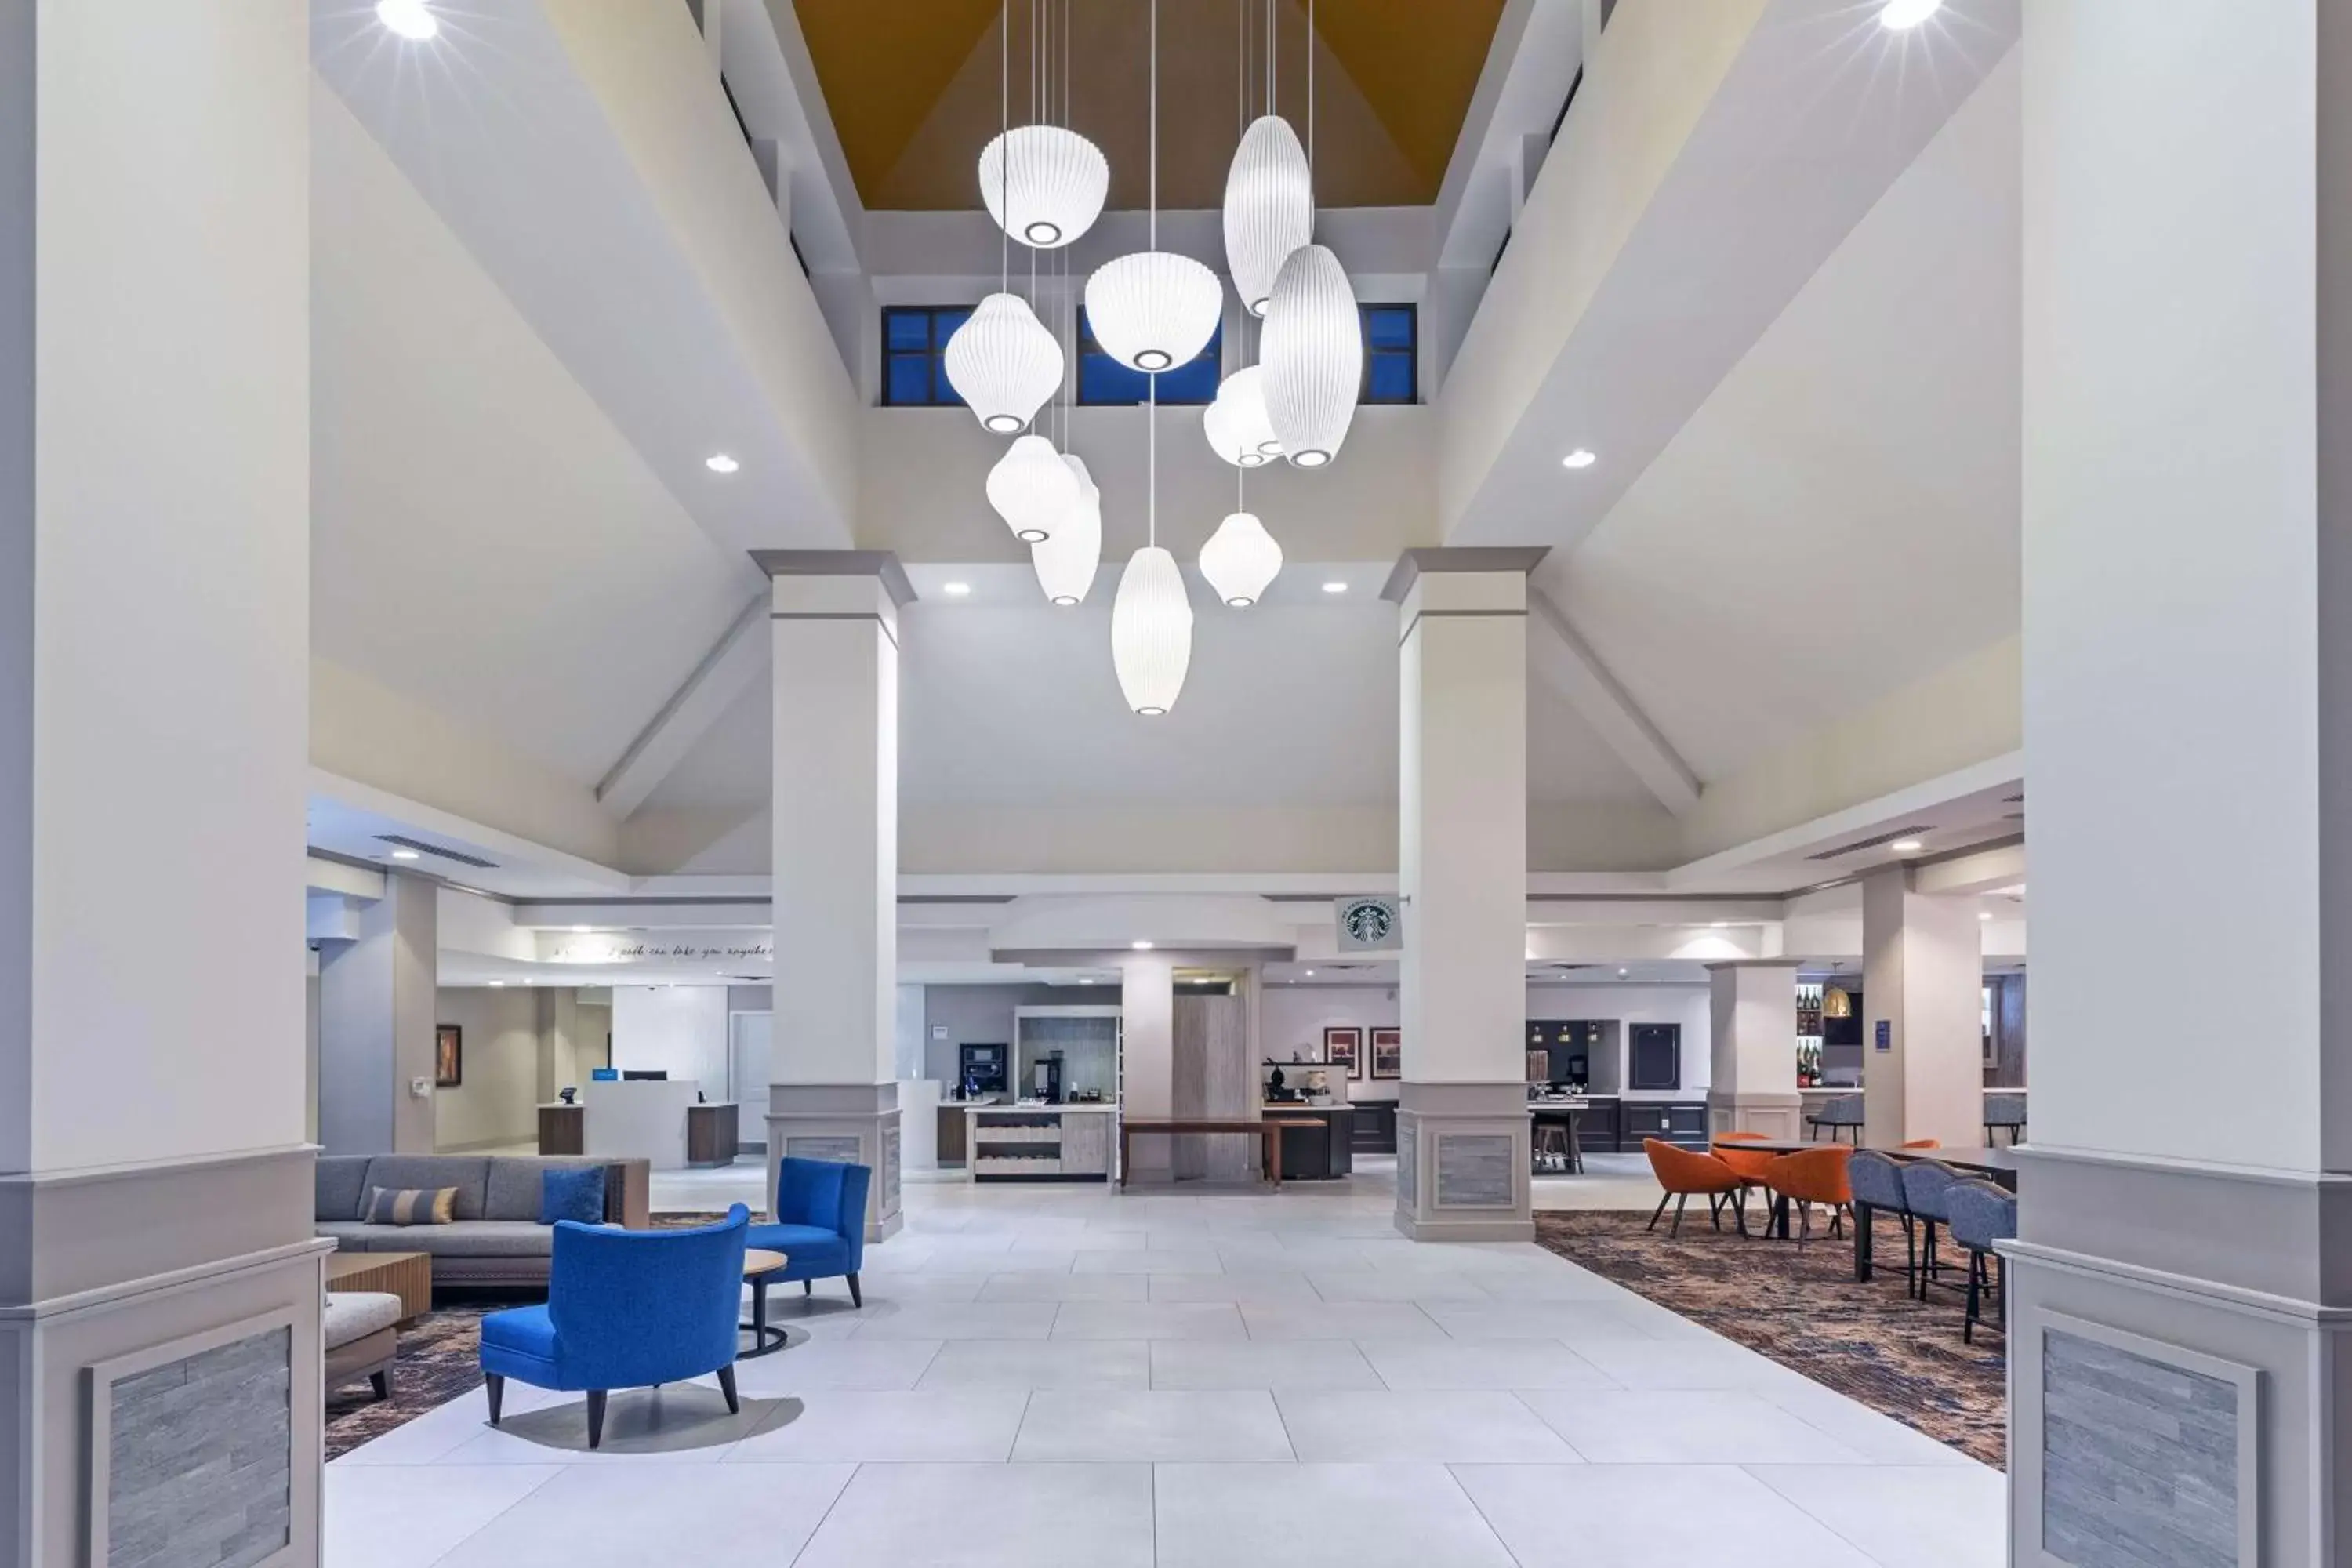 Lobby or reception, Lobby/Reception in Hilton Garden Inn Houston/Sugar Land